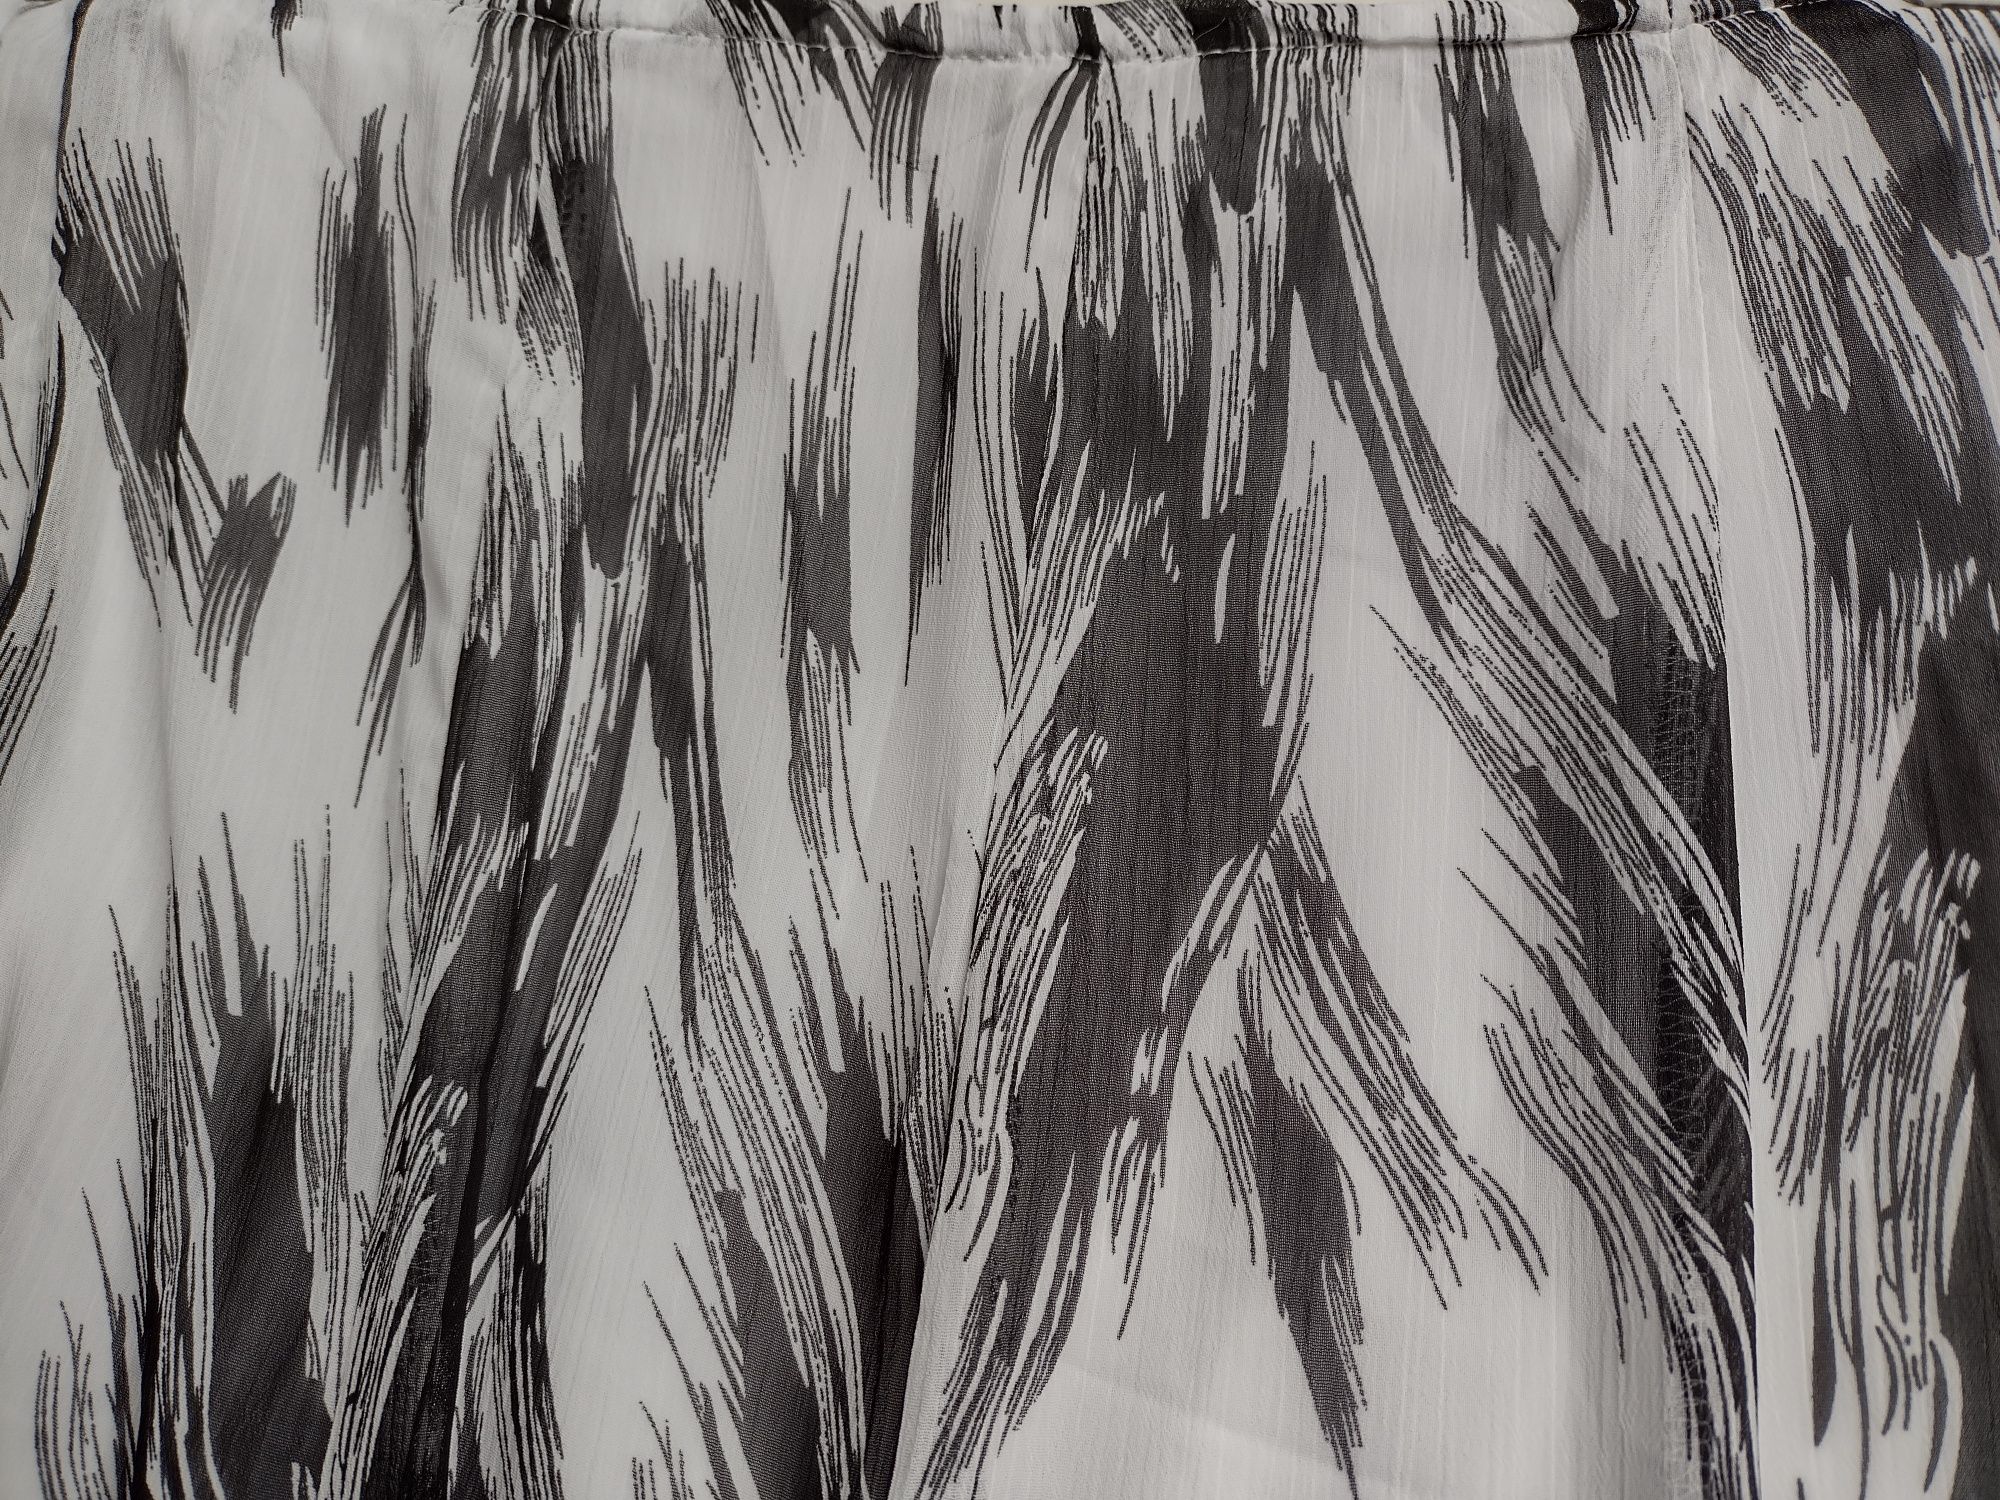 Spódnica cienka r.44 biało czarna w kliny poszerzana